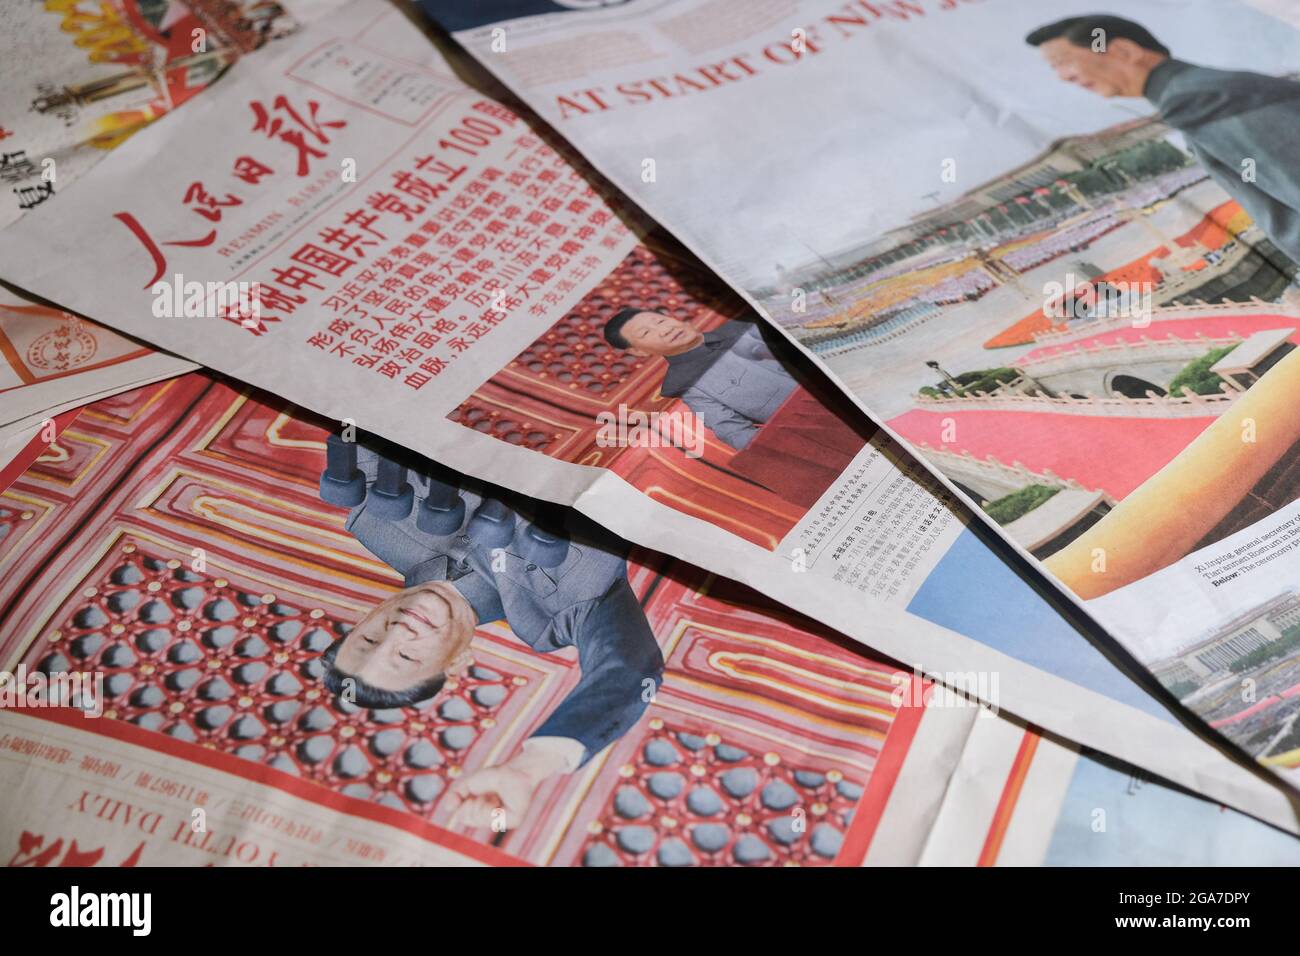 BEIJING, CHINE - 18 juillet 2021 : gros plan des journaux chinois faisant état du 100e anniversaire de la fondation du PCC Banque D'Images